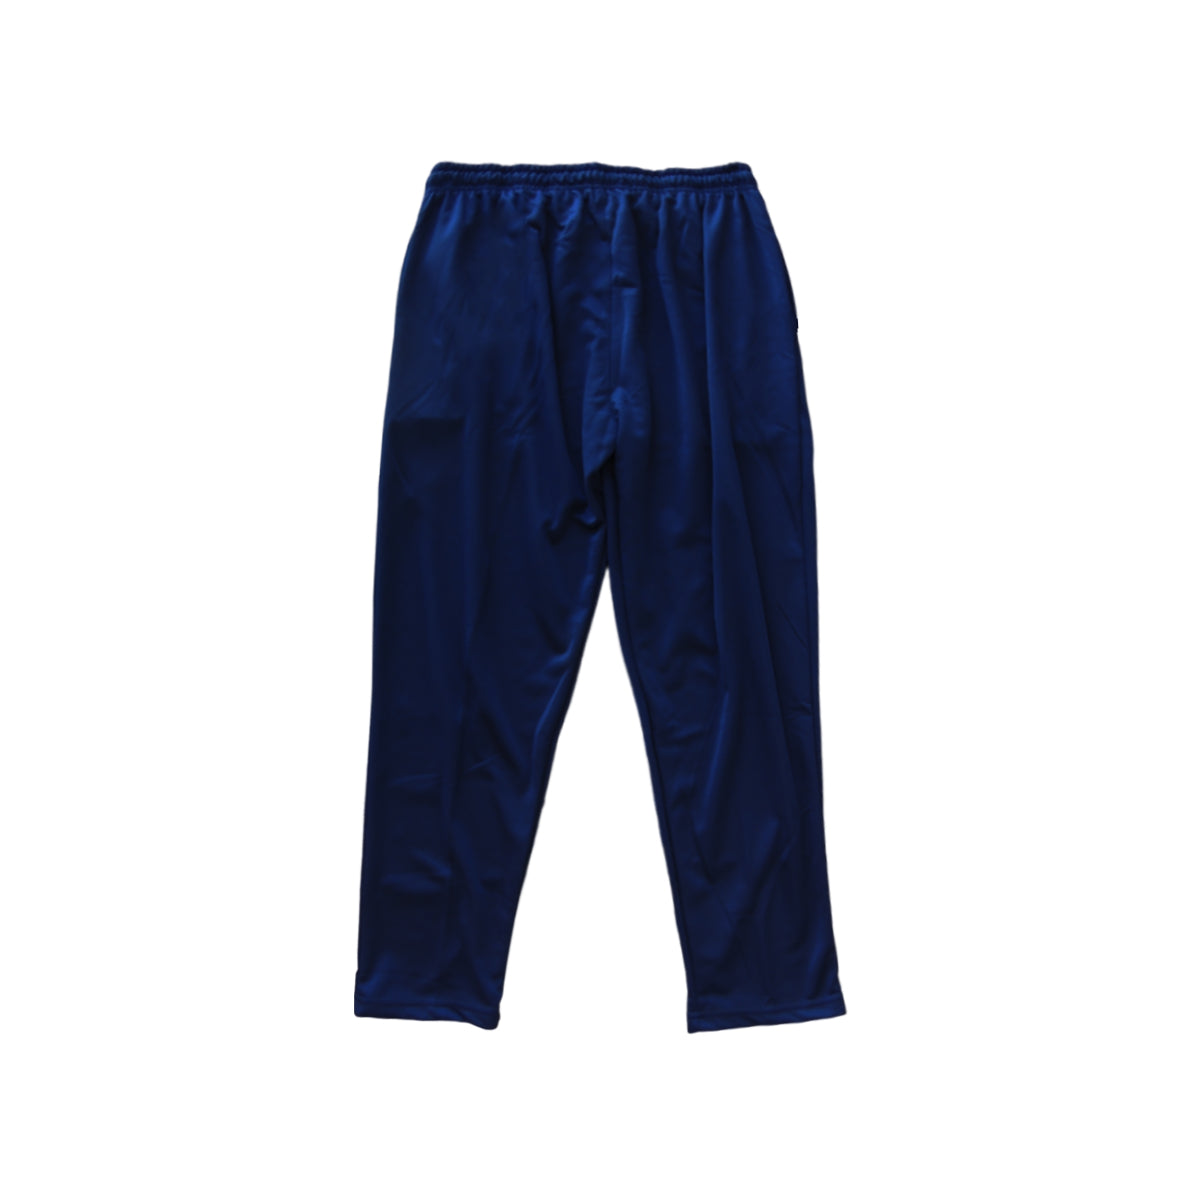 pantalondeportivo#azul-marino